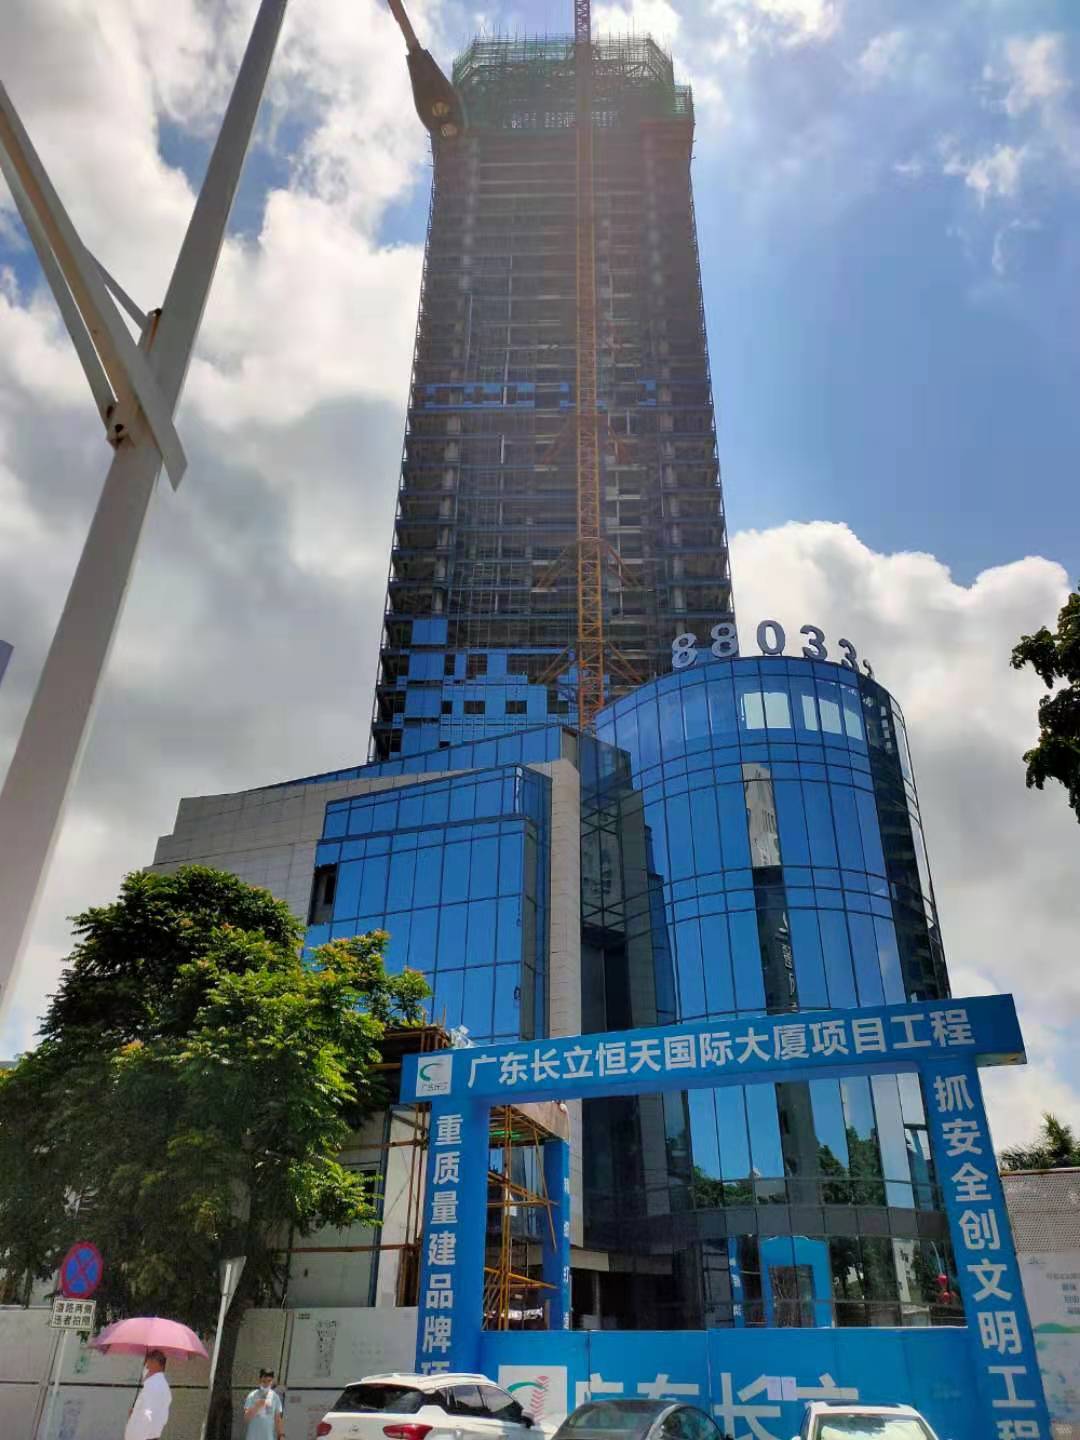 正在进行珠海市香洲区九洲大道中1027号恒天国际大厦第18层1803房建筑